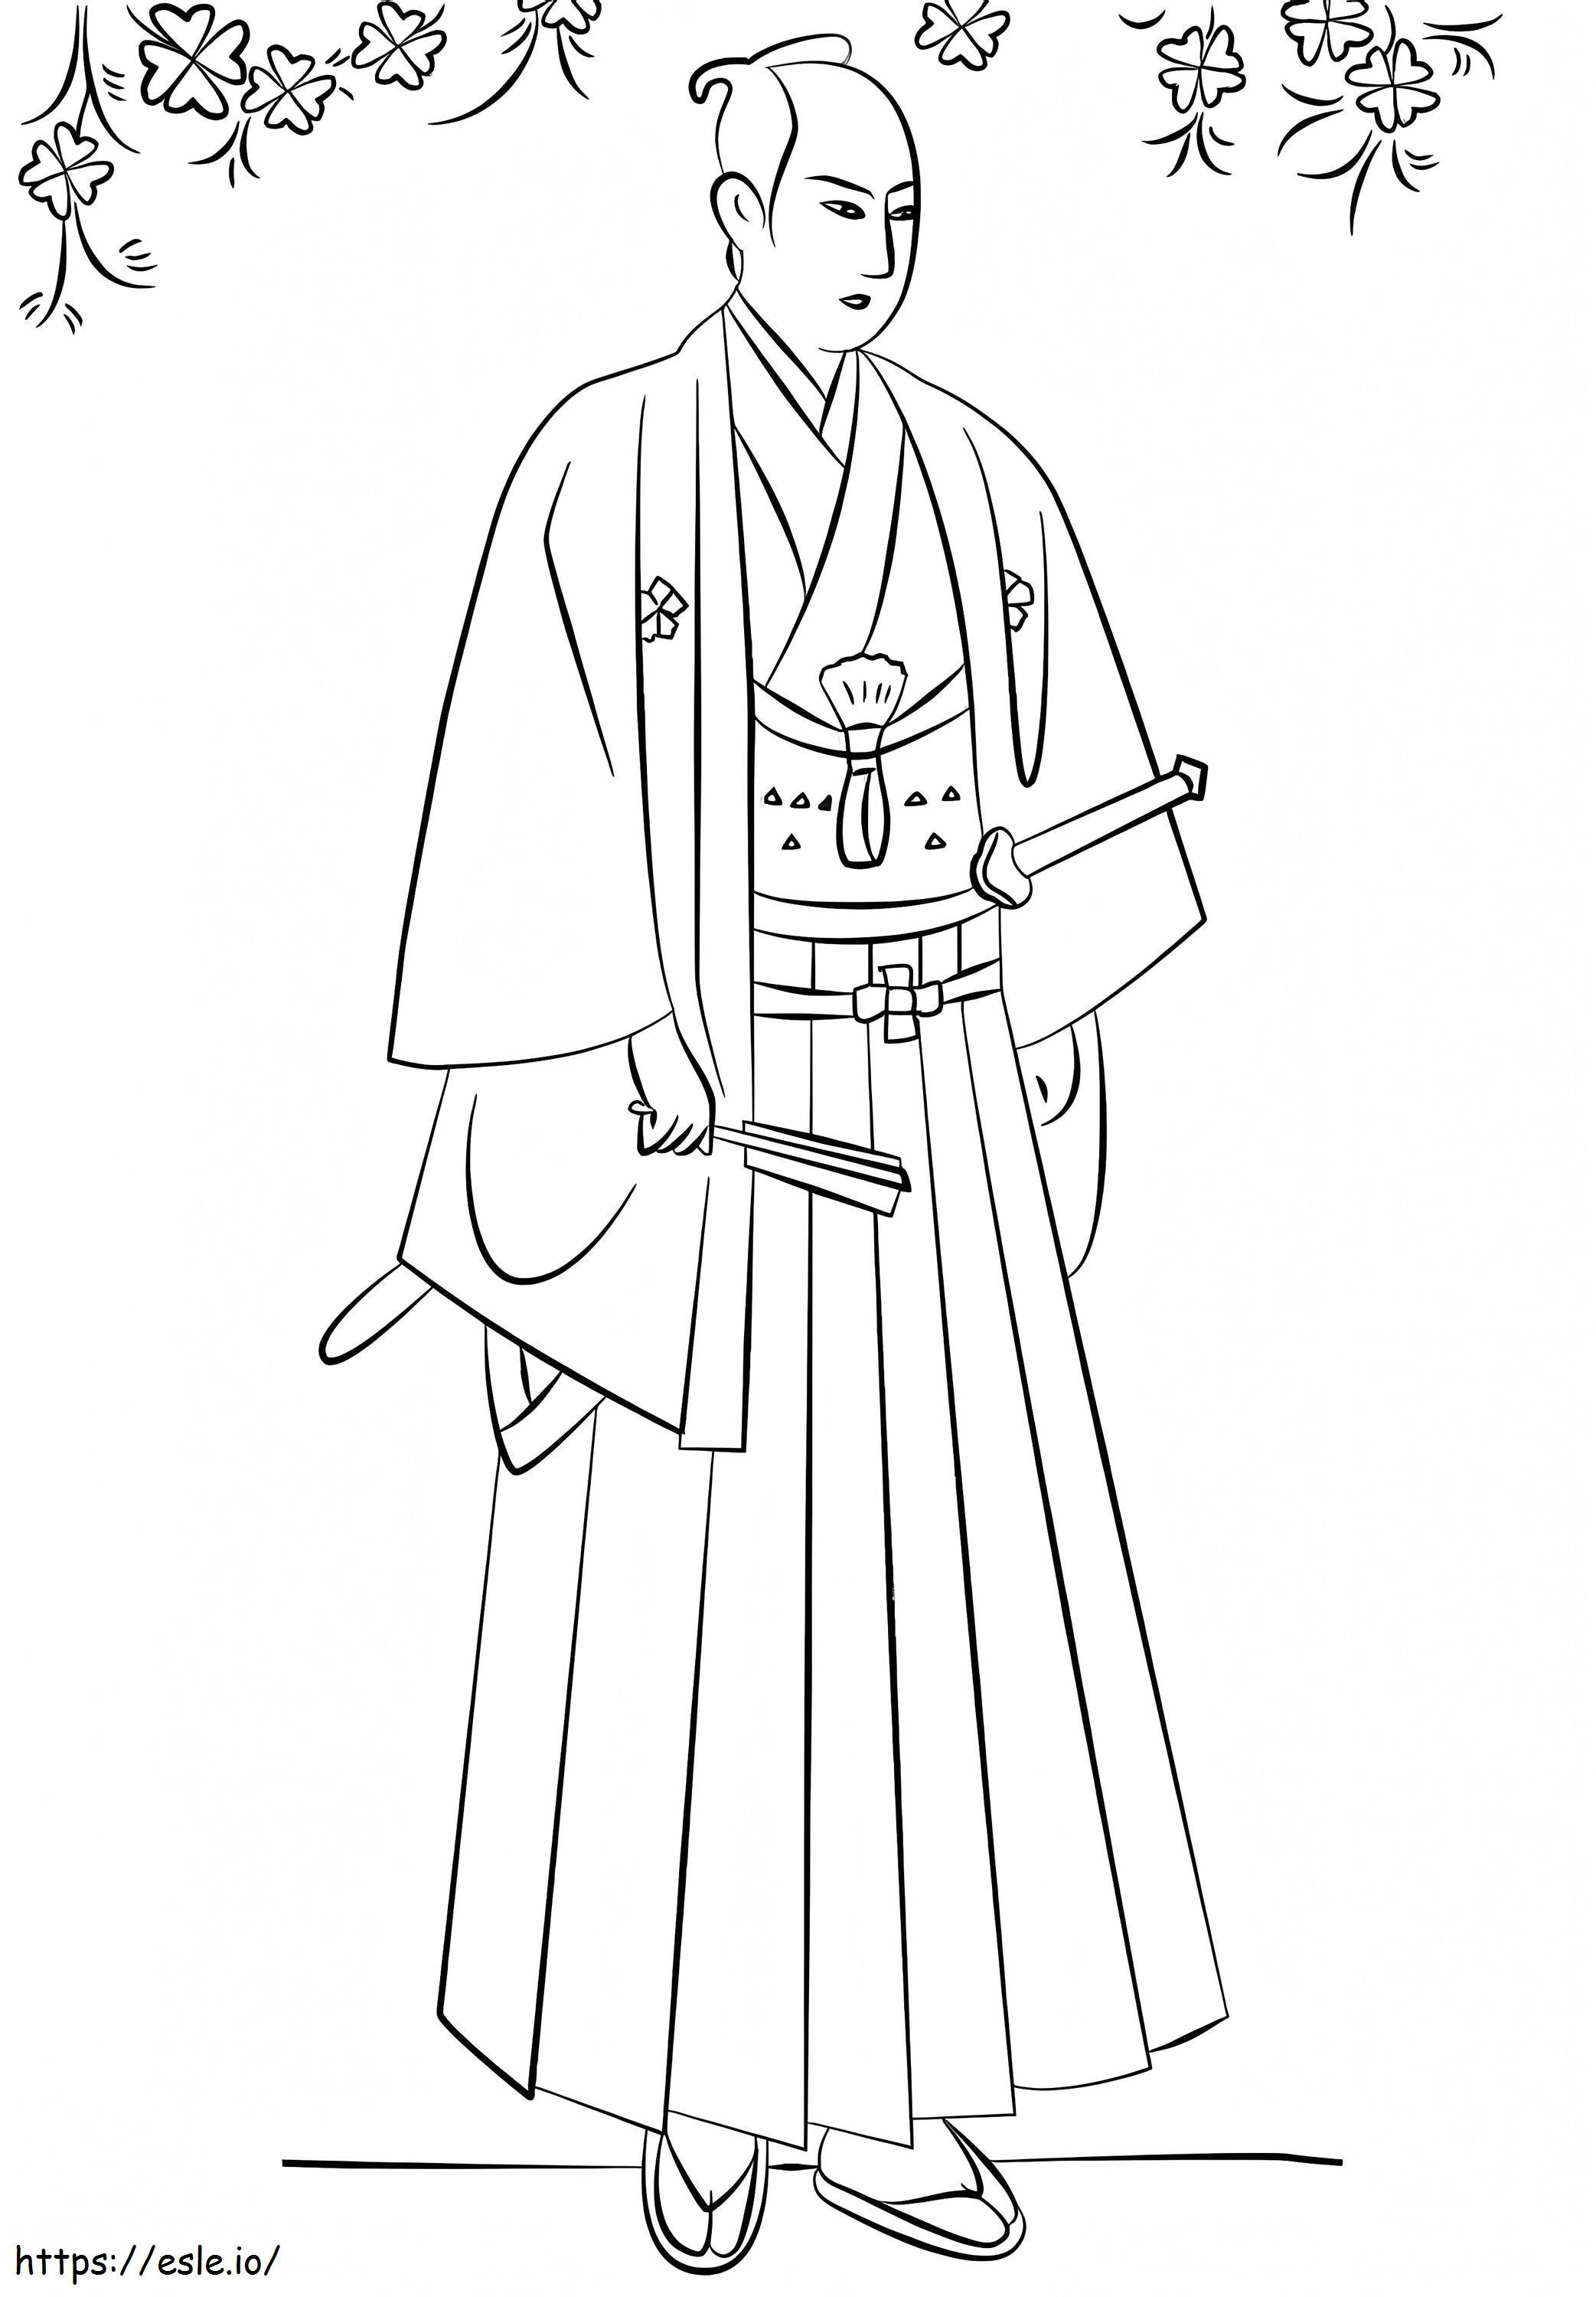 Beeindruckender Samurai ausmalbilder